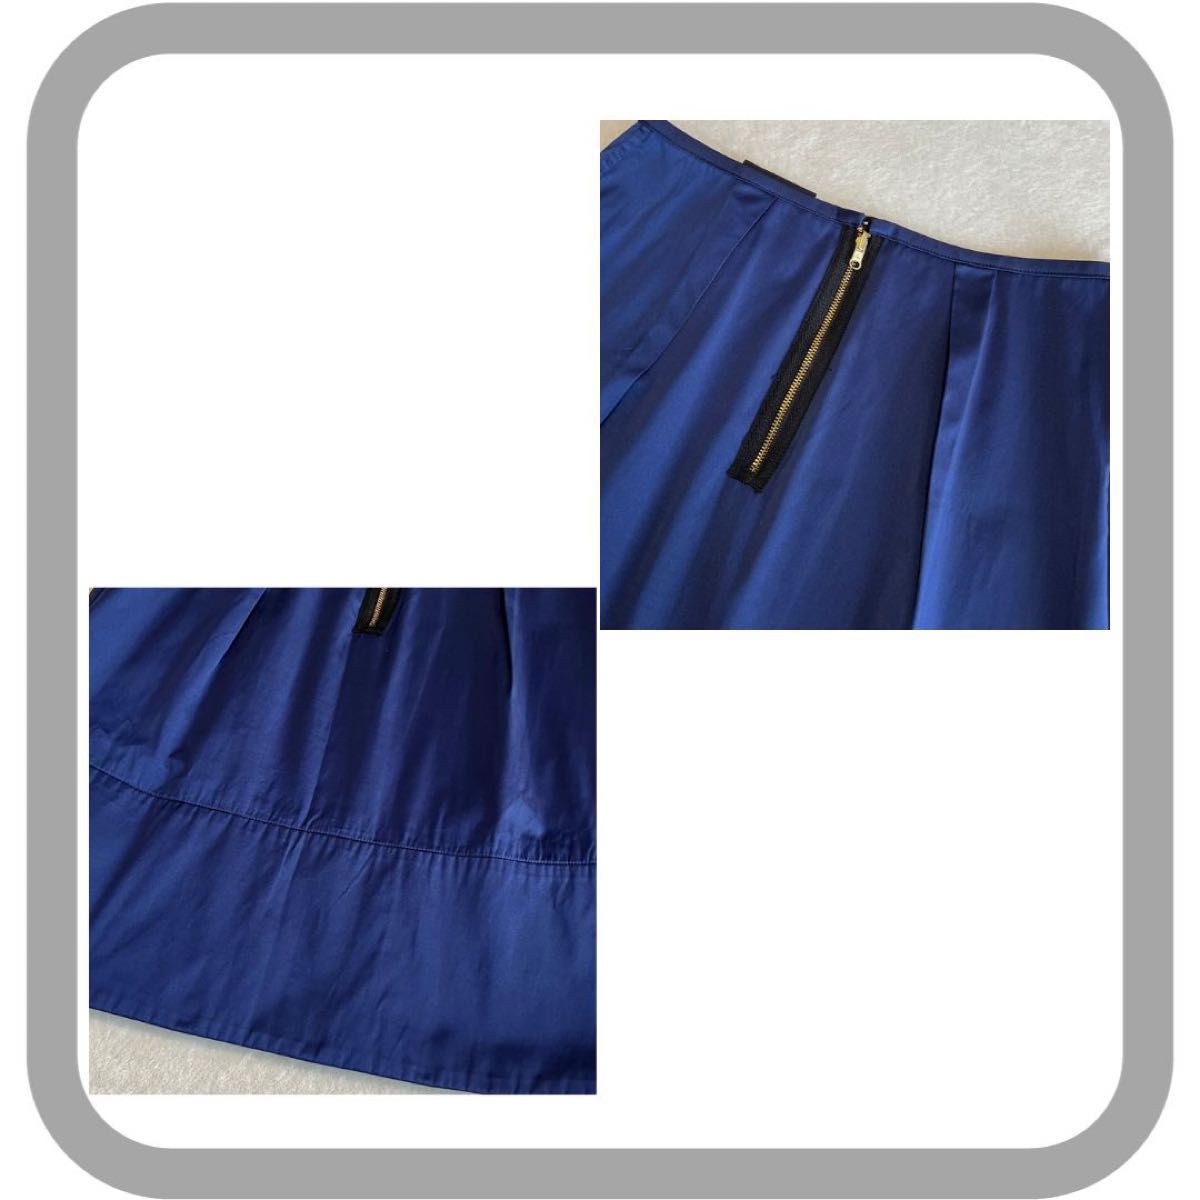 自由区　オンワード　日本製　リバーシブル　膝丈スカート　黒×紺　オフィス　36